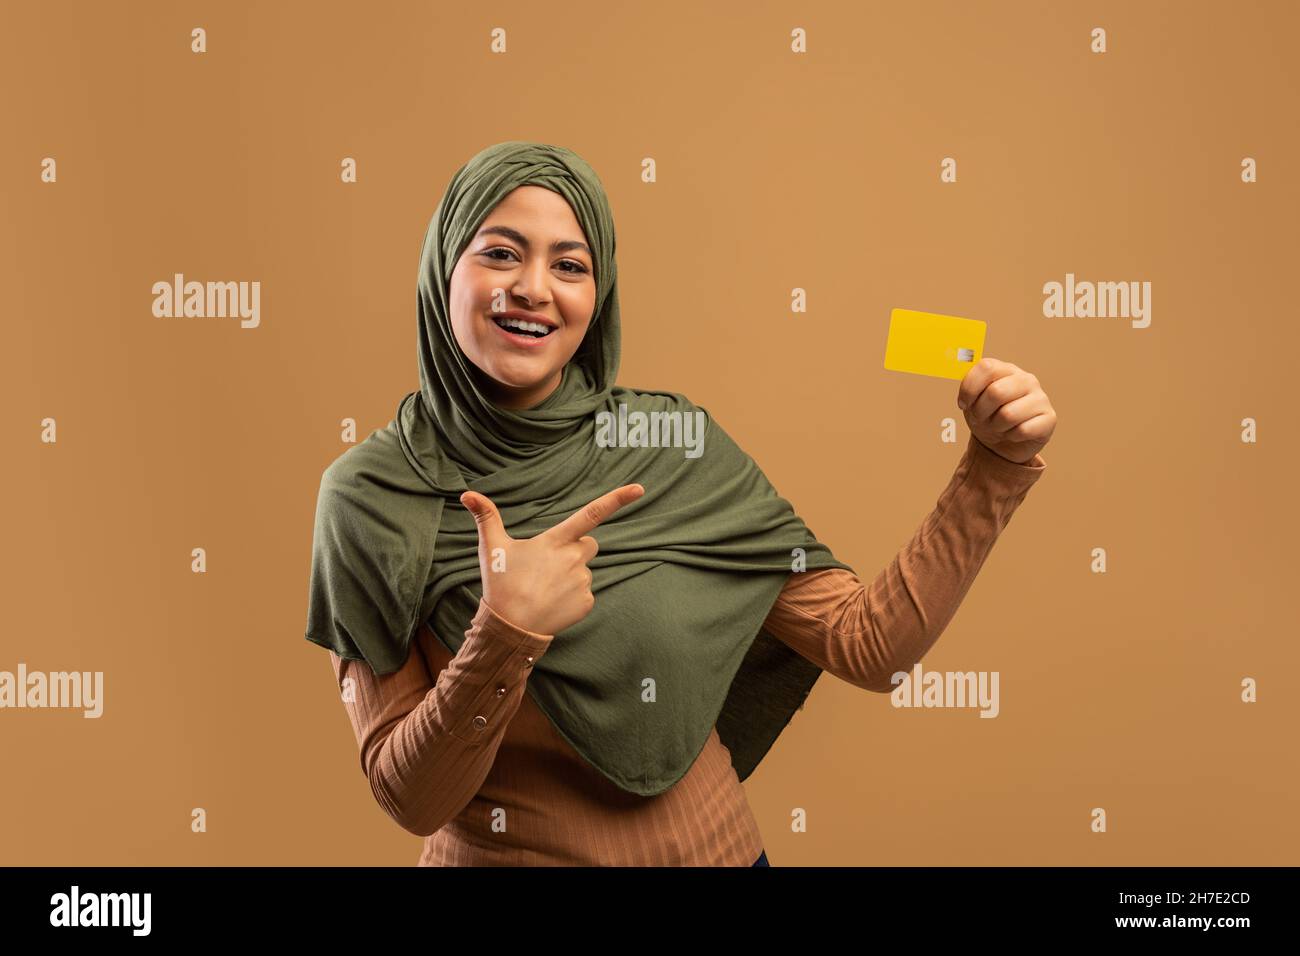 Kontaktloses Shopping-Konzept. Glückliche muslimische Dame zeigt auf Kreditkarte, empfiehlt Service, brauner Hintergrund Stockfoto